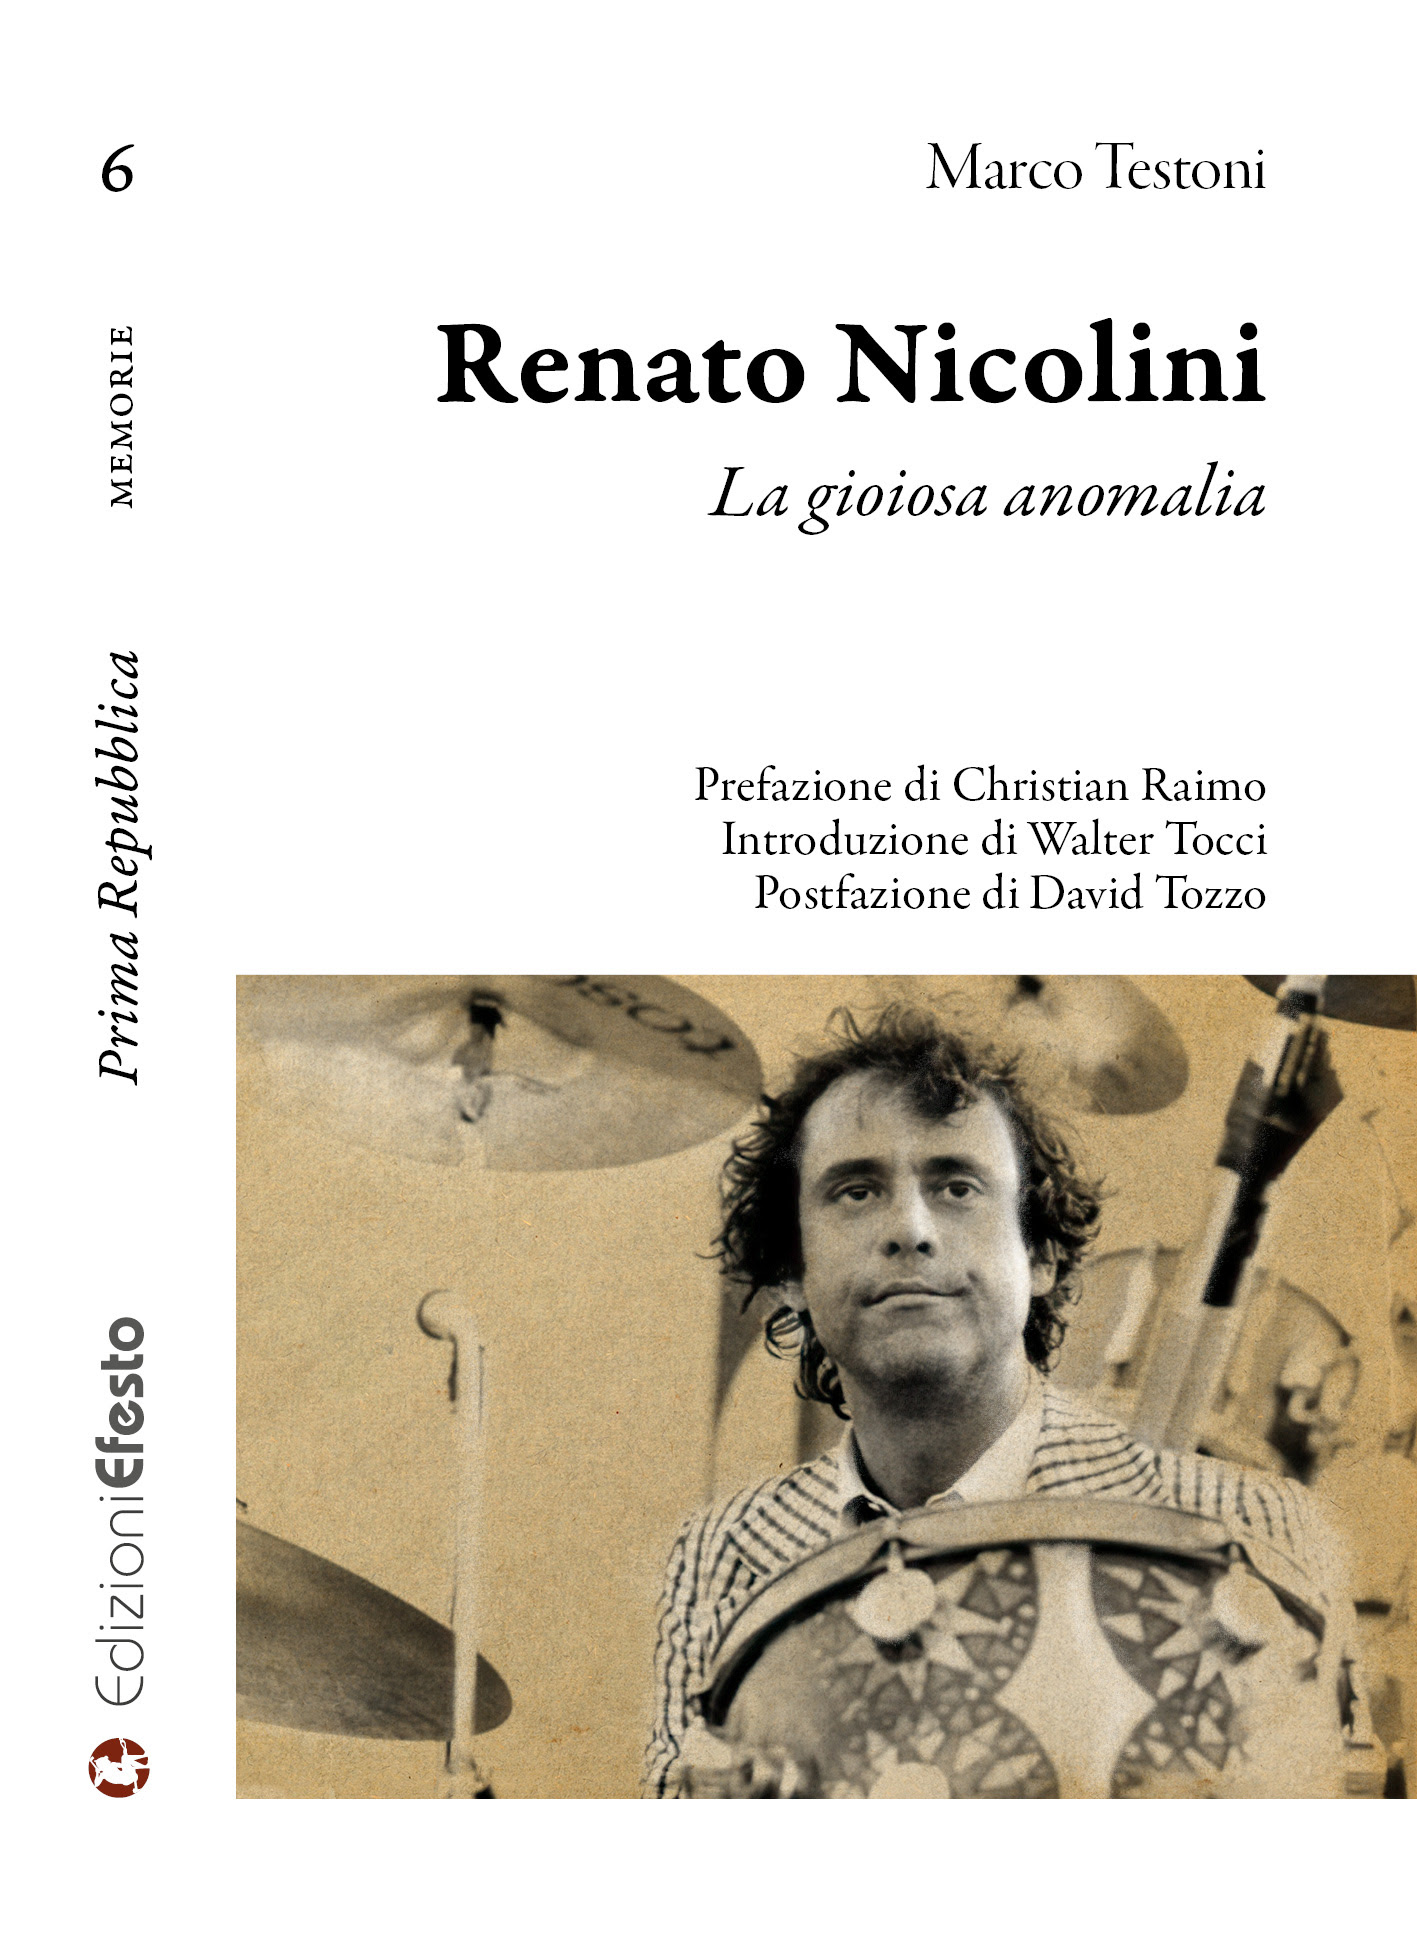 Renato Nicolini 1